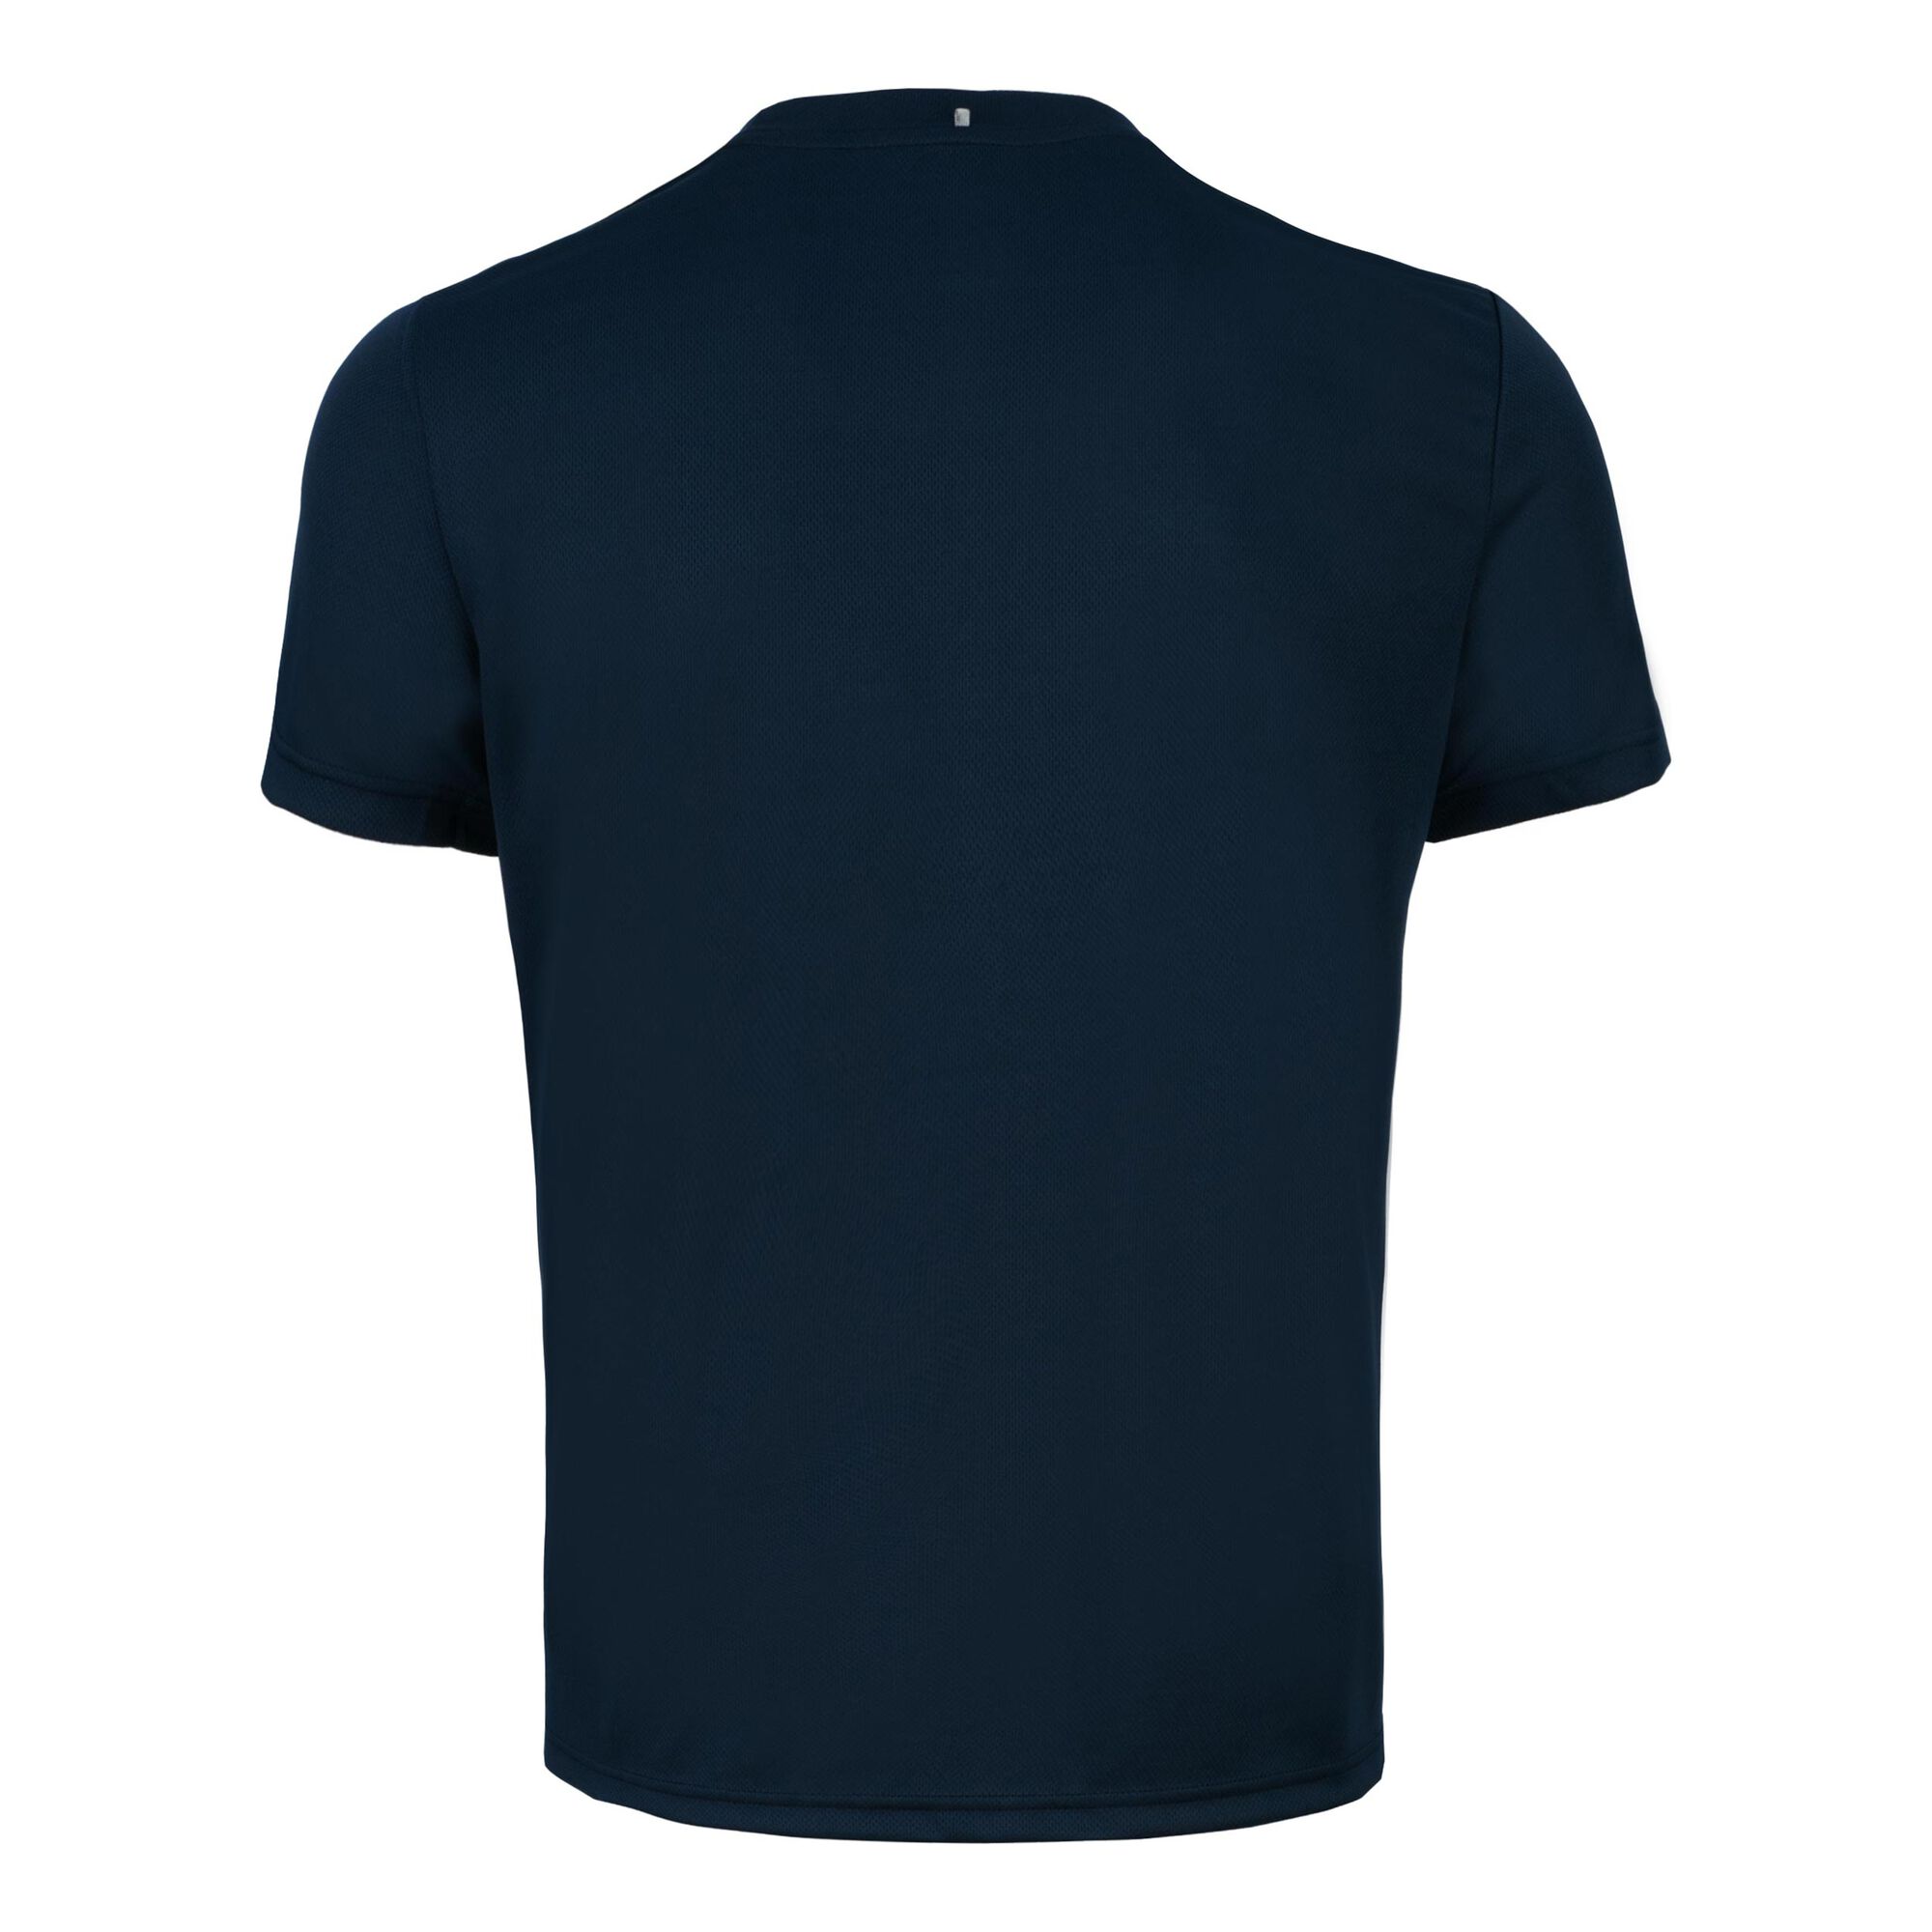 Buy Fila Small Logo T-Shirt Men Dark Blue online